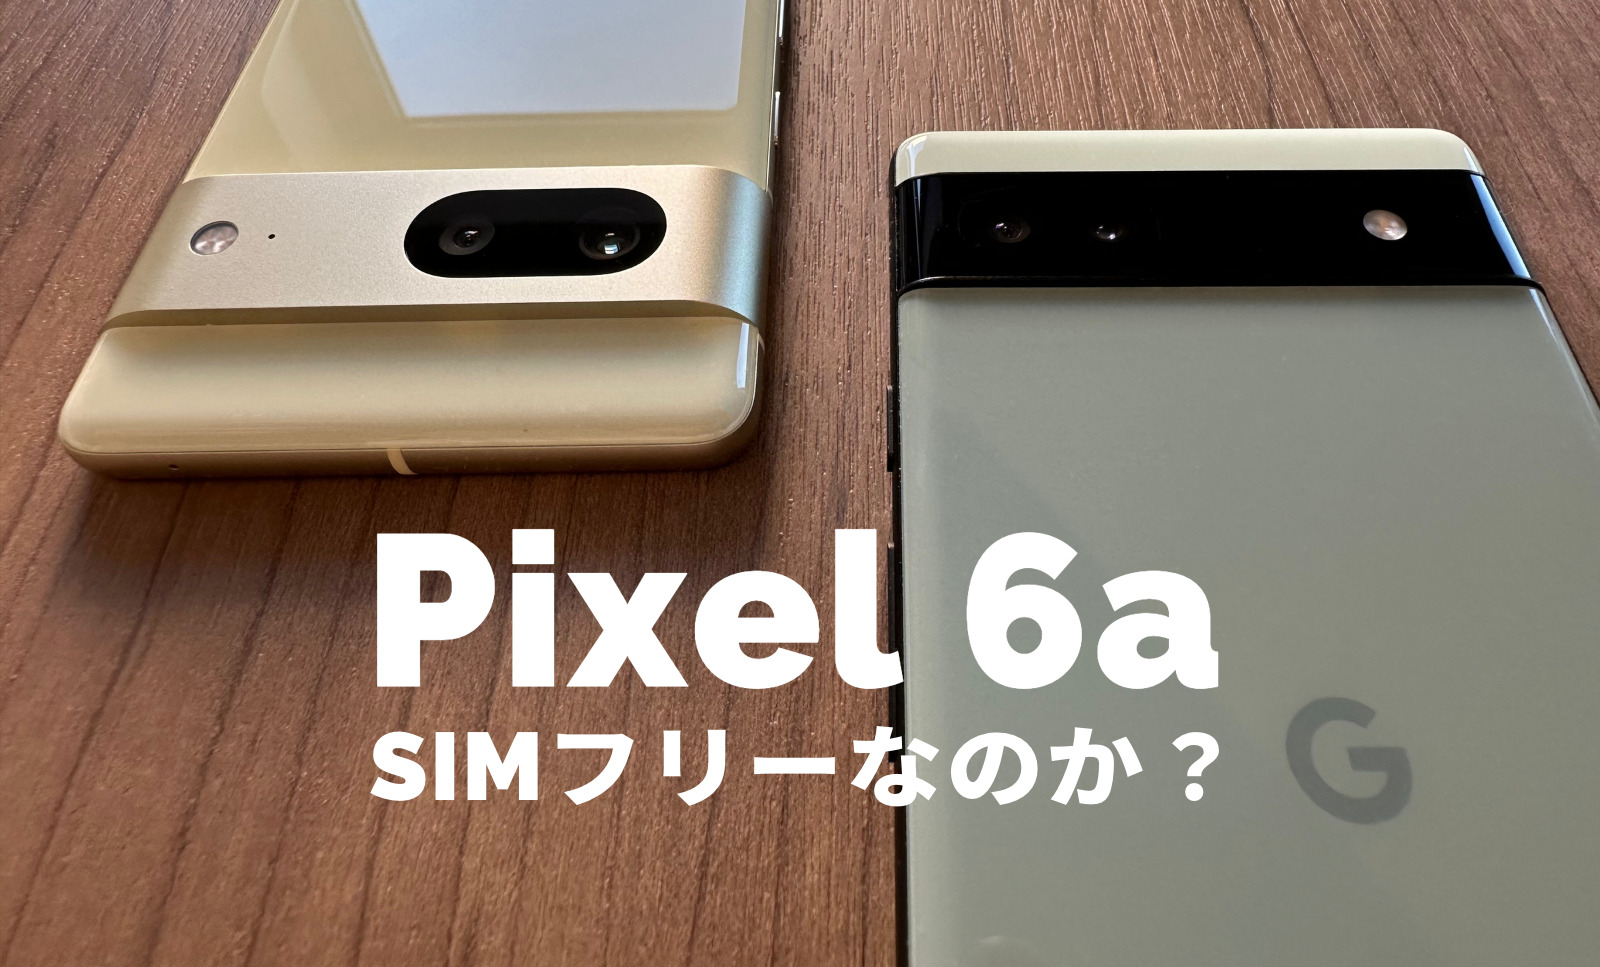 Google Pixel 6aはSIMフリー？対応バンドは？【ピクセル6a】のサムネイル画像